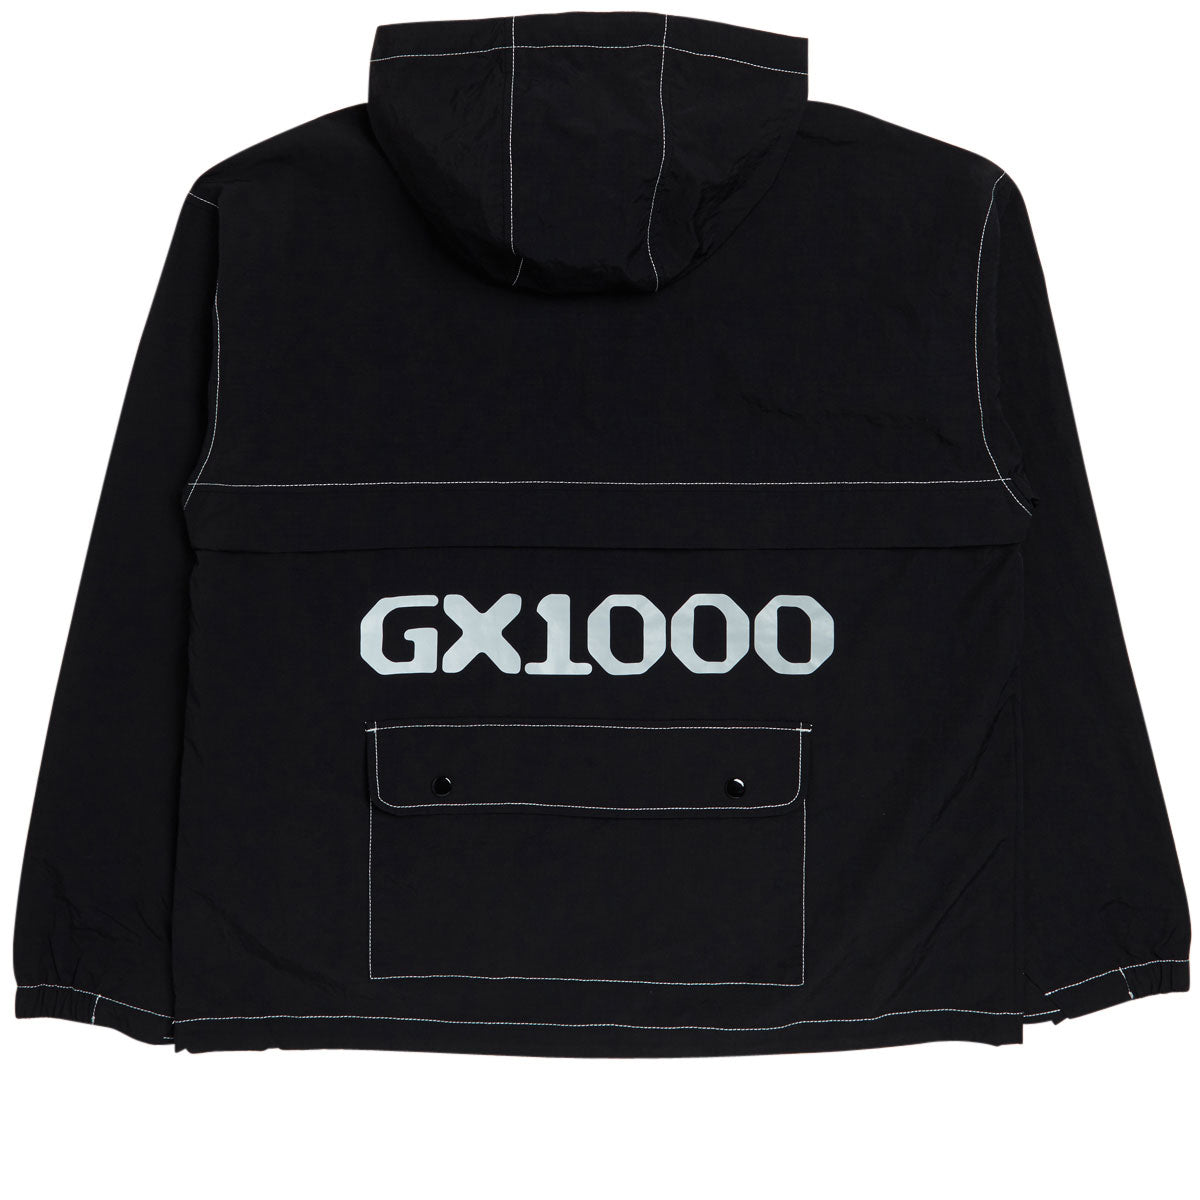 GX1000 Anorak Jacket - Black image 2